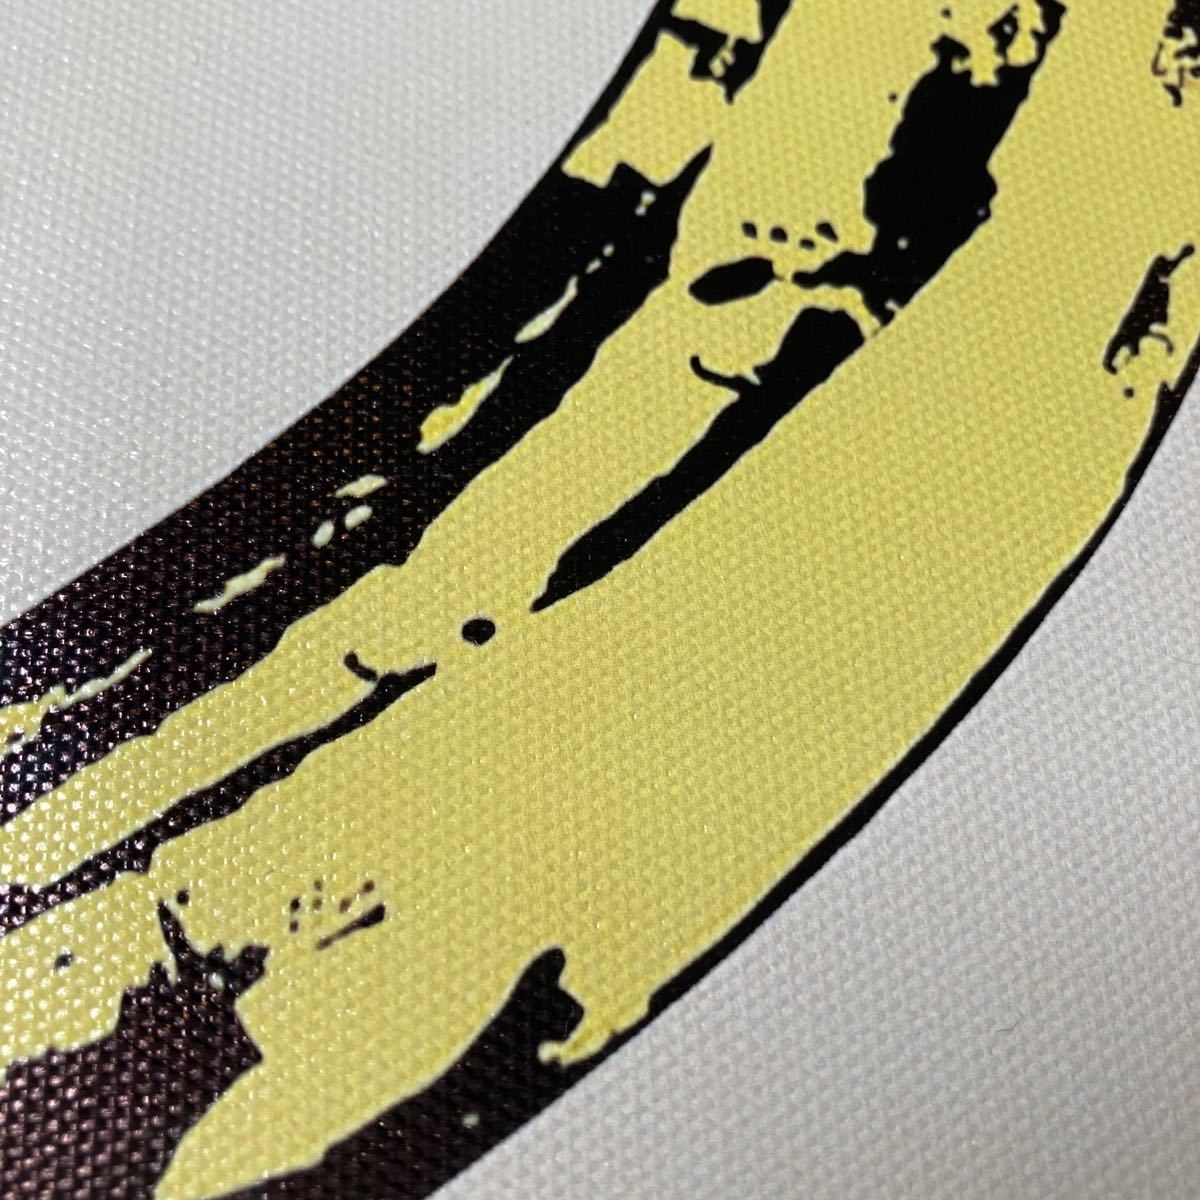 【額付きポスター】アンディ ウォーホル 「バナナ」(新品)